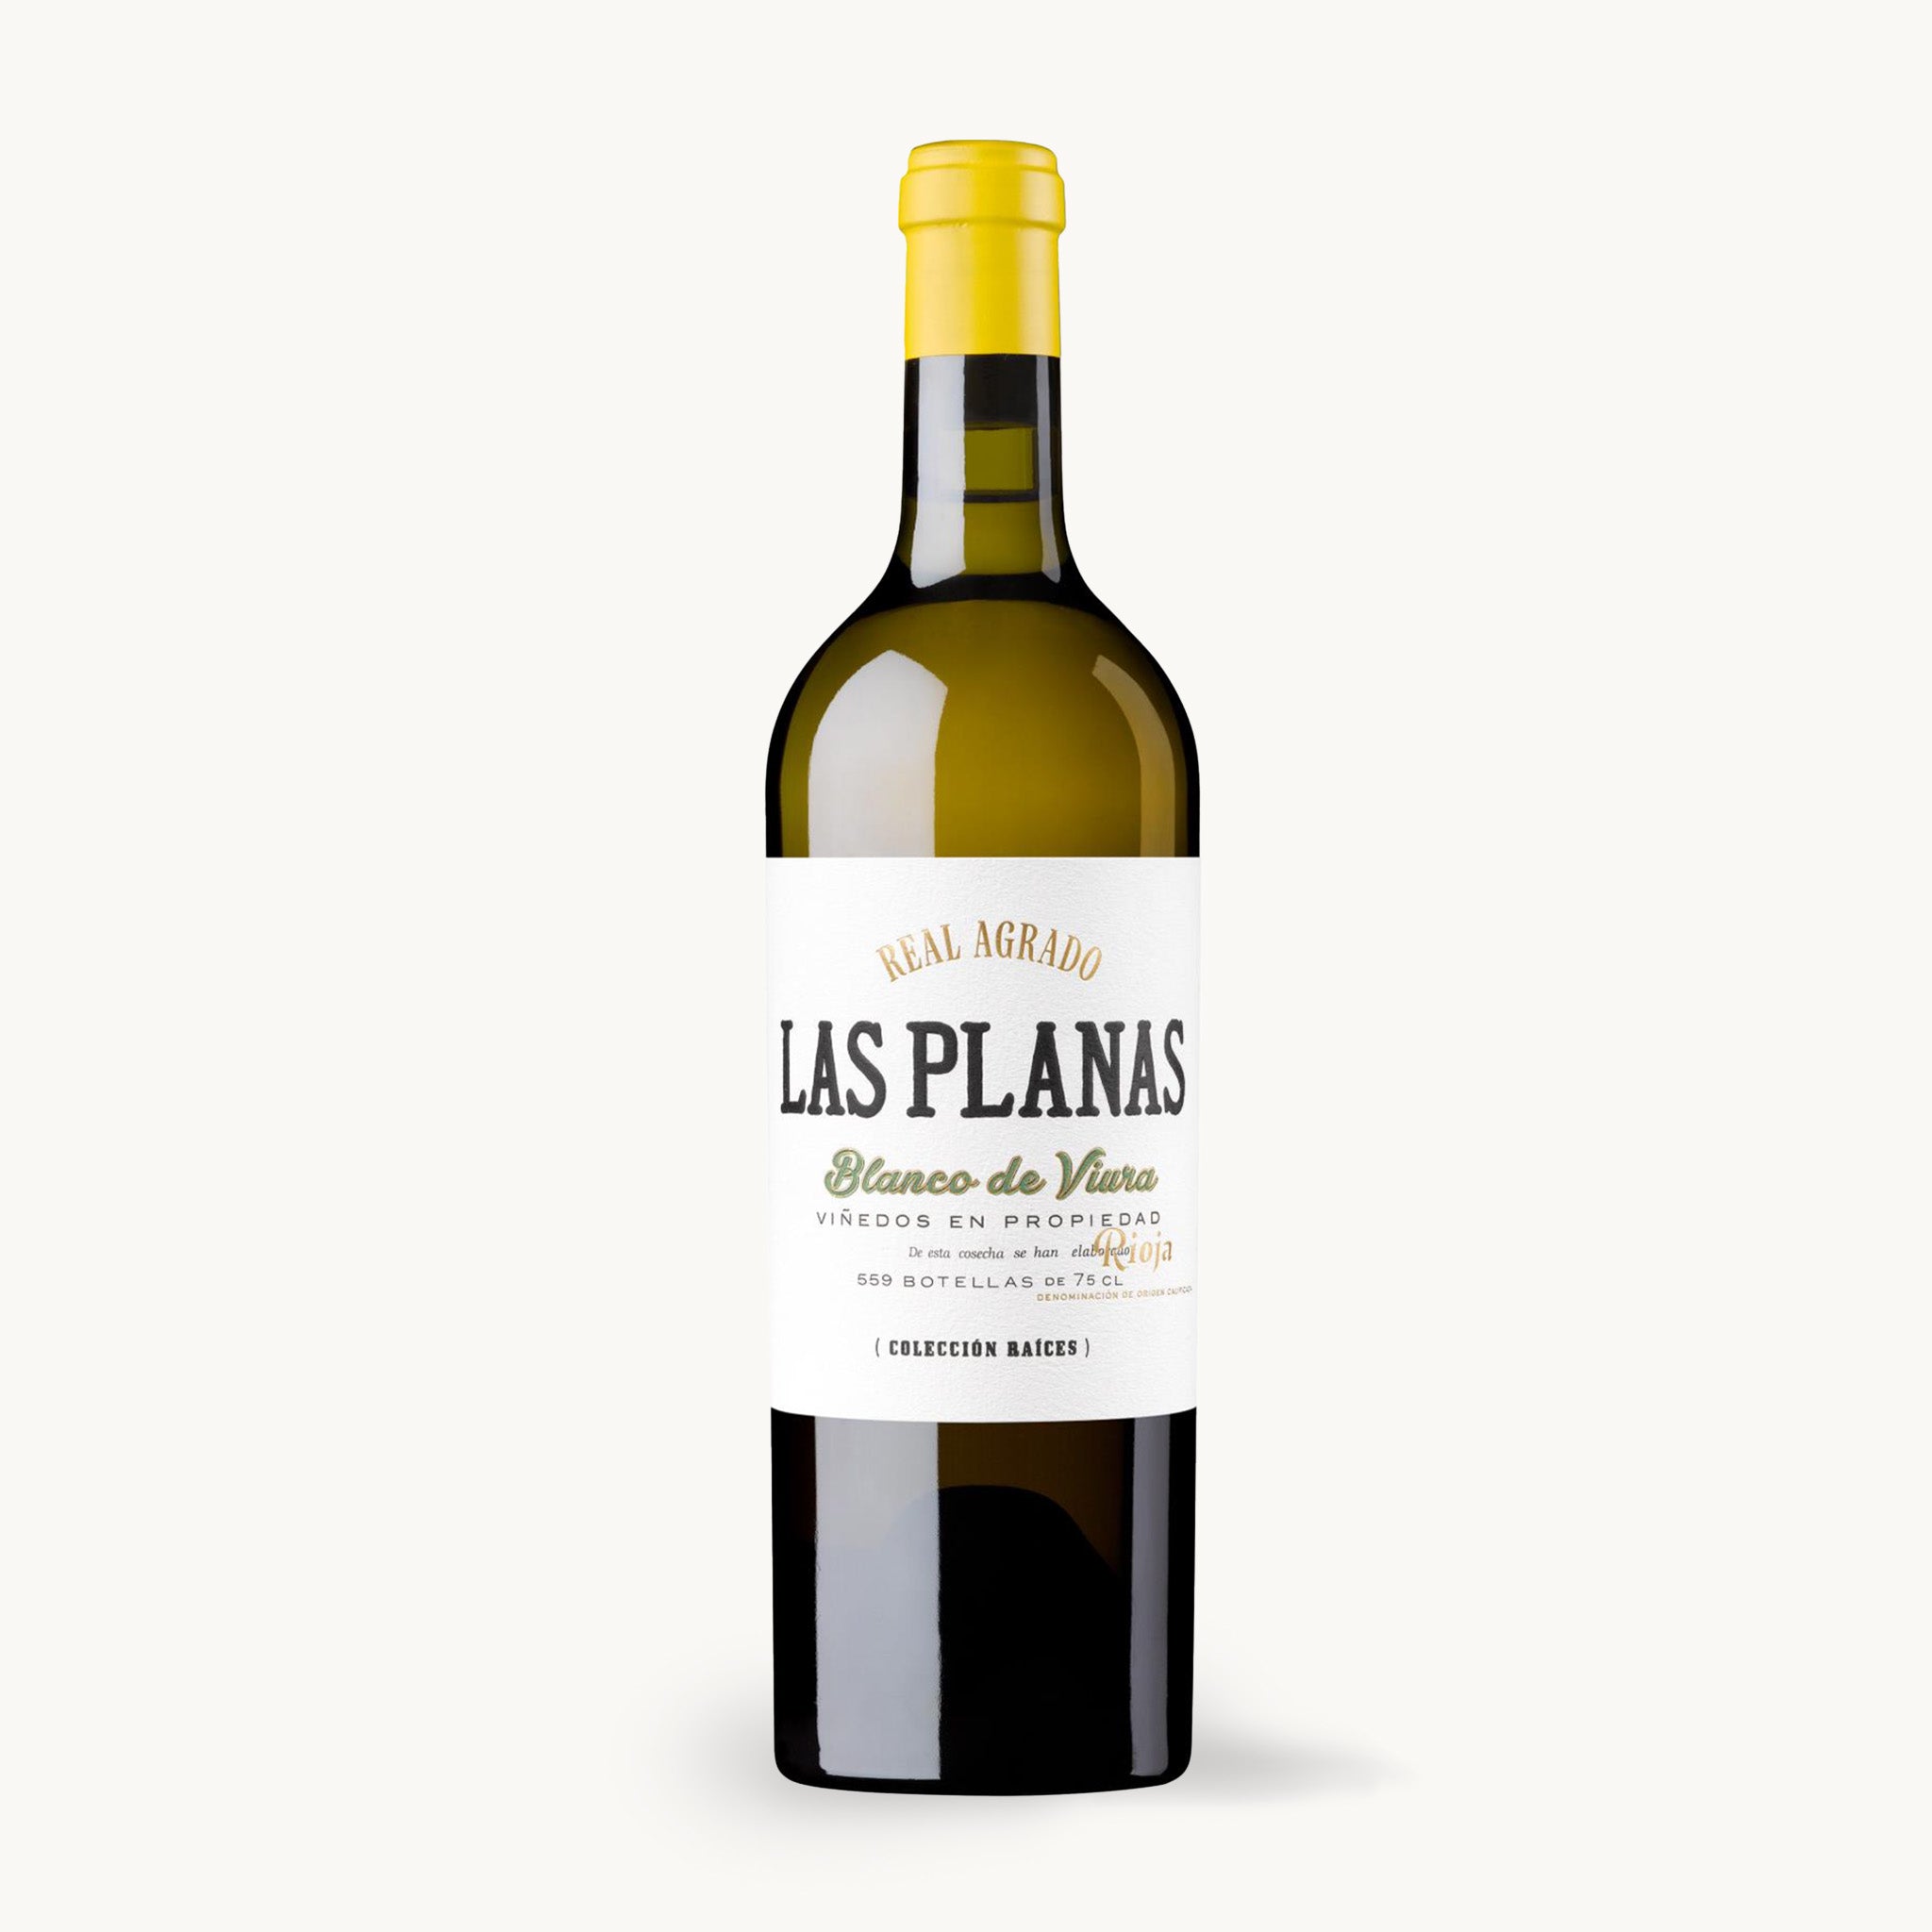 Las Planas Single Vineyard Rioja, Real Agrado